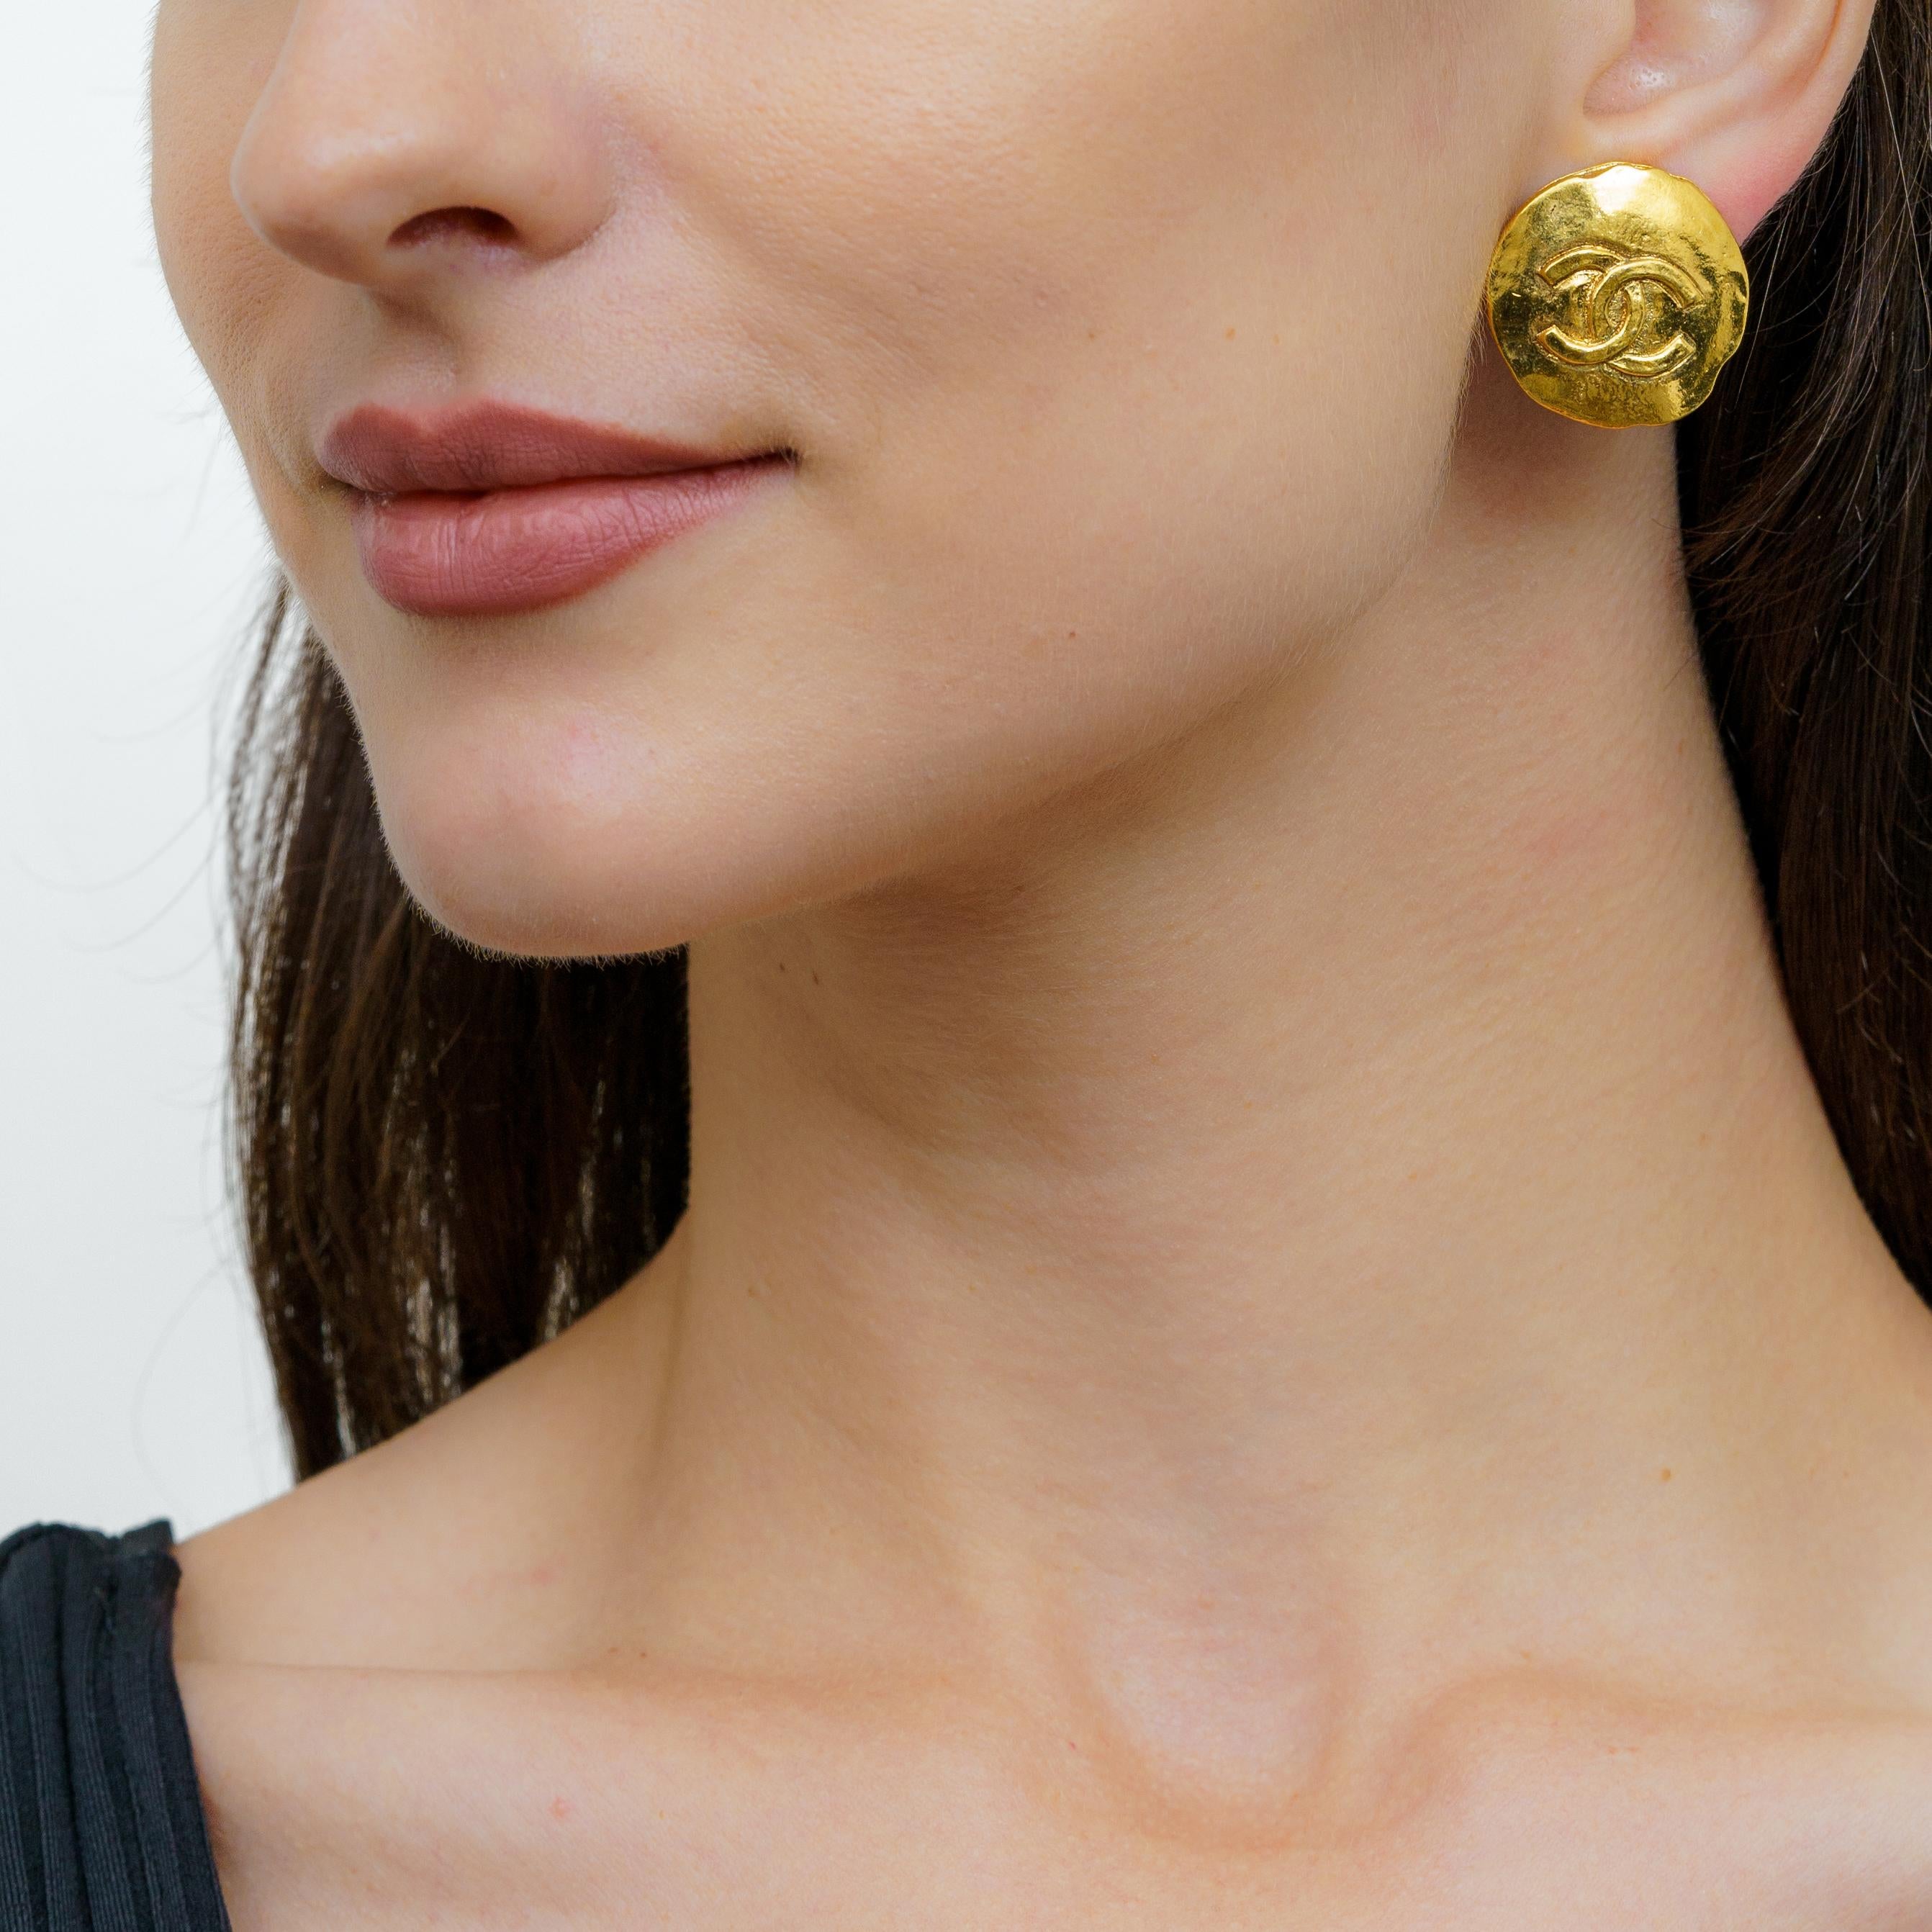 Diese eleganten und luxuriösen Chanel Logo-Knopf-Ohrringe verleihen jedem Look einen Hauch von Raffinesse. Diese Ohrringe sind aus vergoldetem Metall gefertigt und mit dem ikonischen Chanel-Logo verziert. Sie sind ein echter Hingucker. Mit ihrem